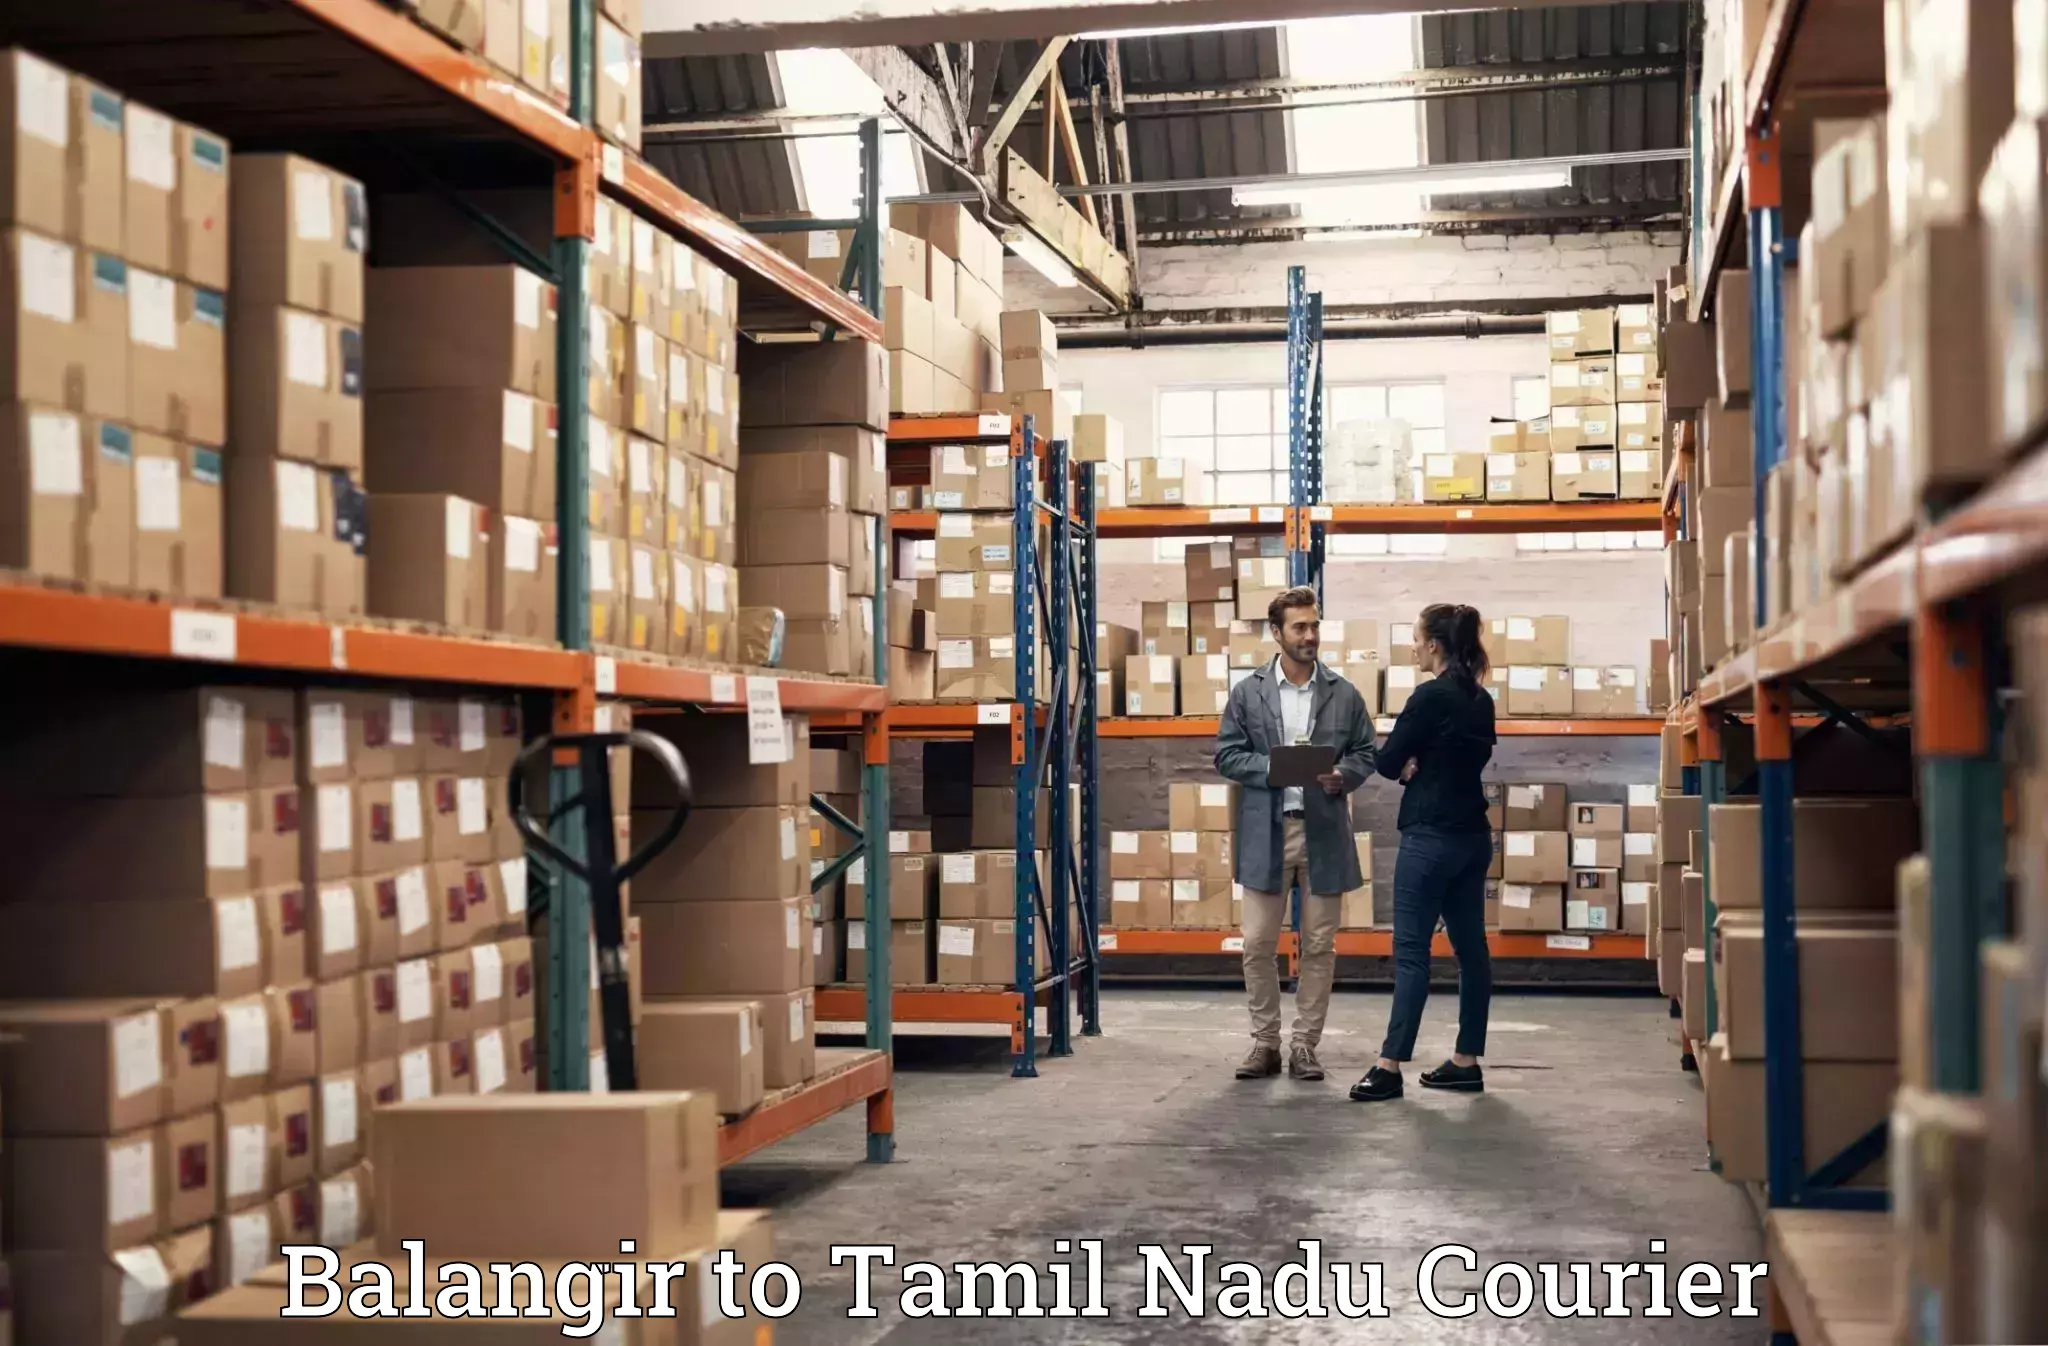 Furniture moving assistance Balangir to Vickramasingapuram